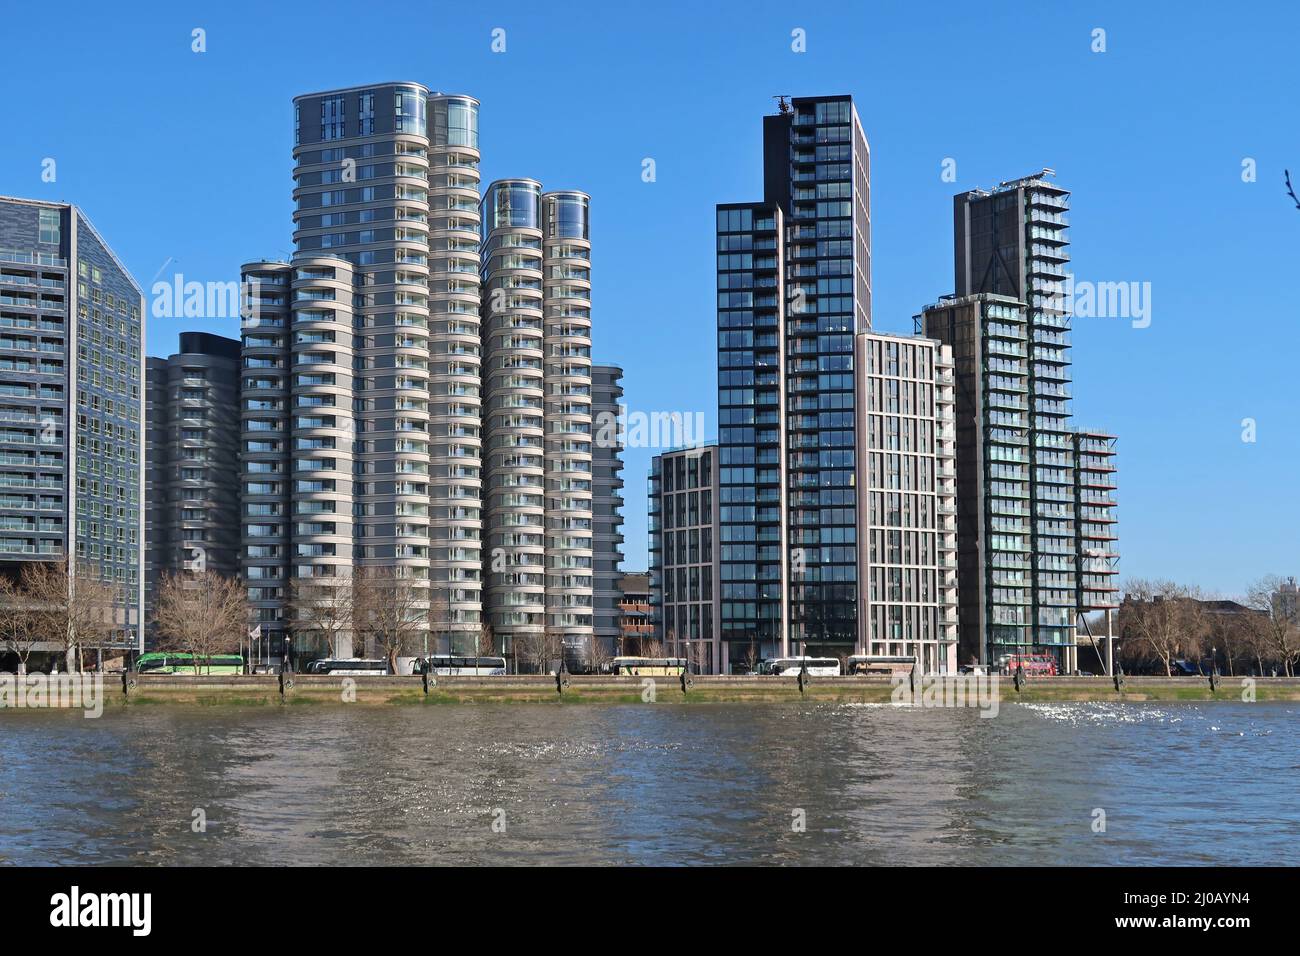 Nuovi blocchi di appartamenti sull'Albert Embankment di Londra. Comprende la Corniche di Foster + Partners (a sinistra) e Merano Residences di Richard Rogers (a destra). Foto Stock